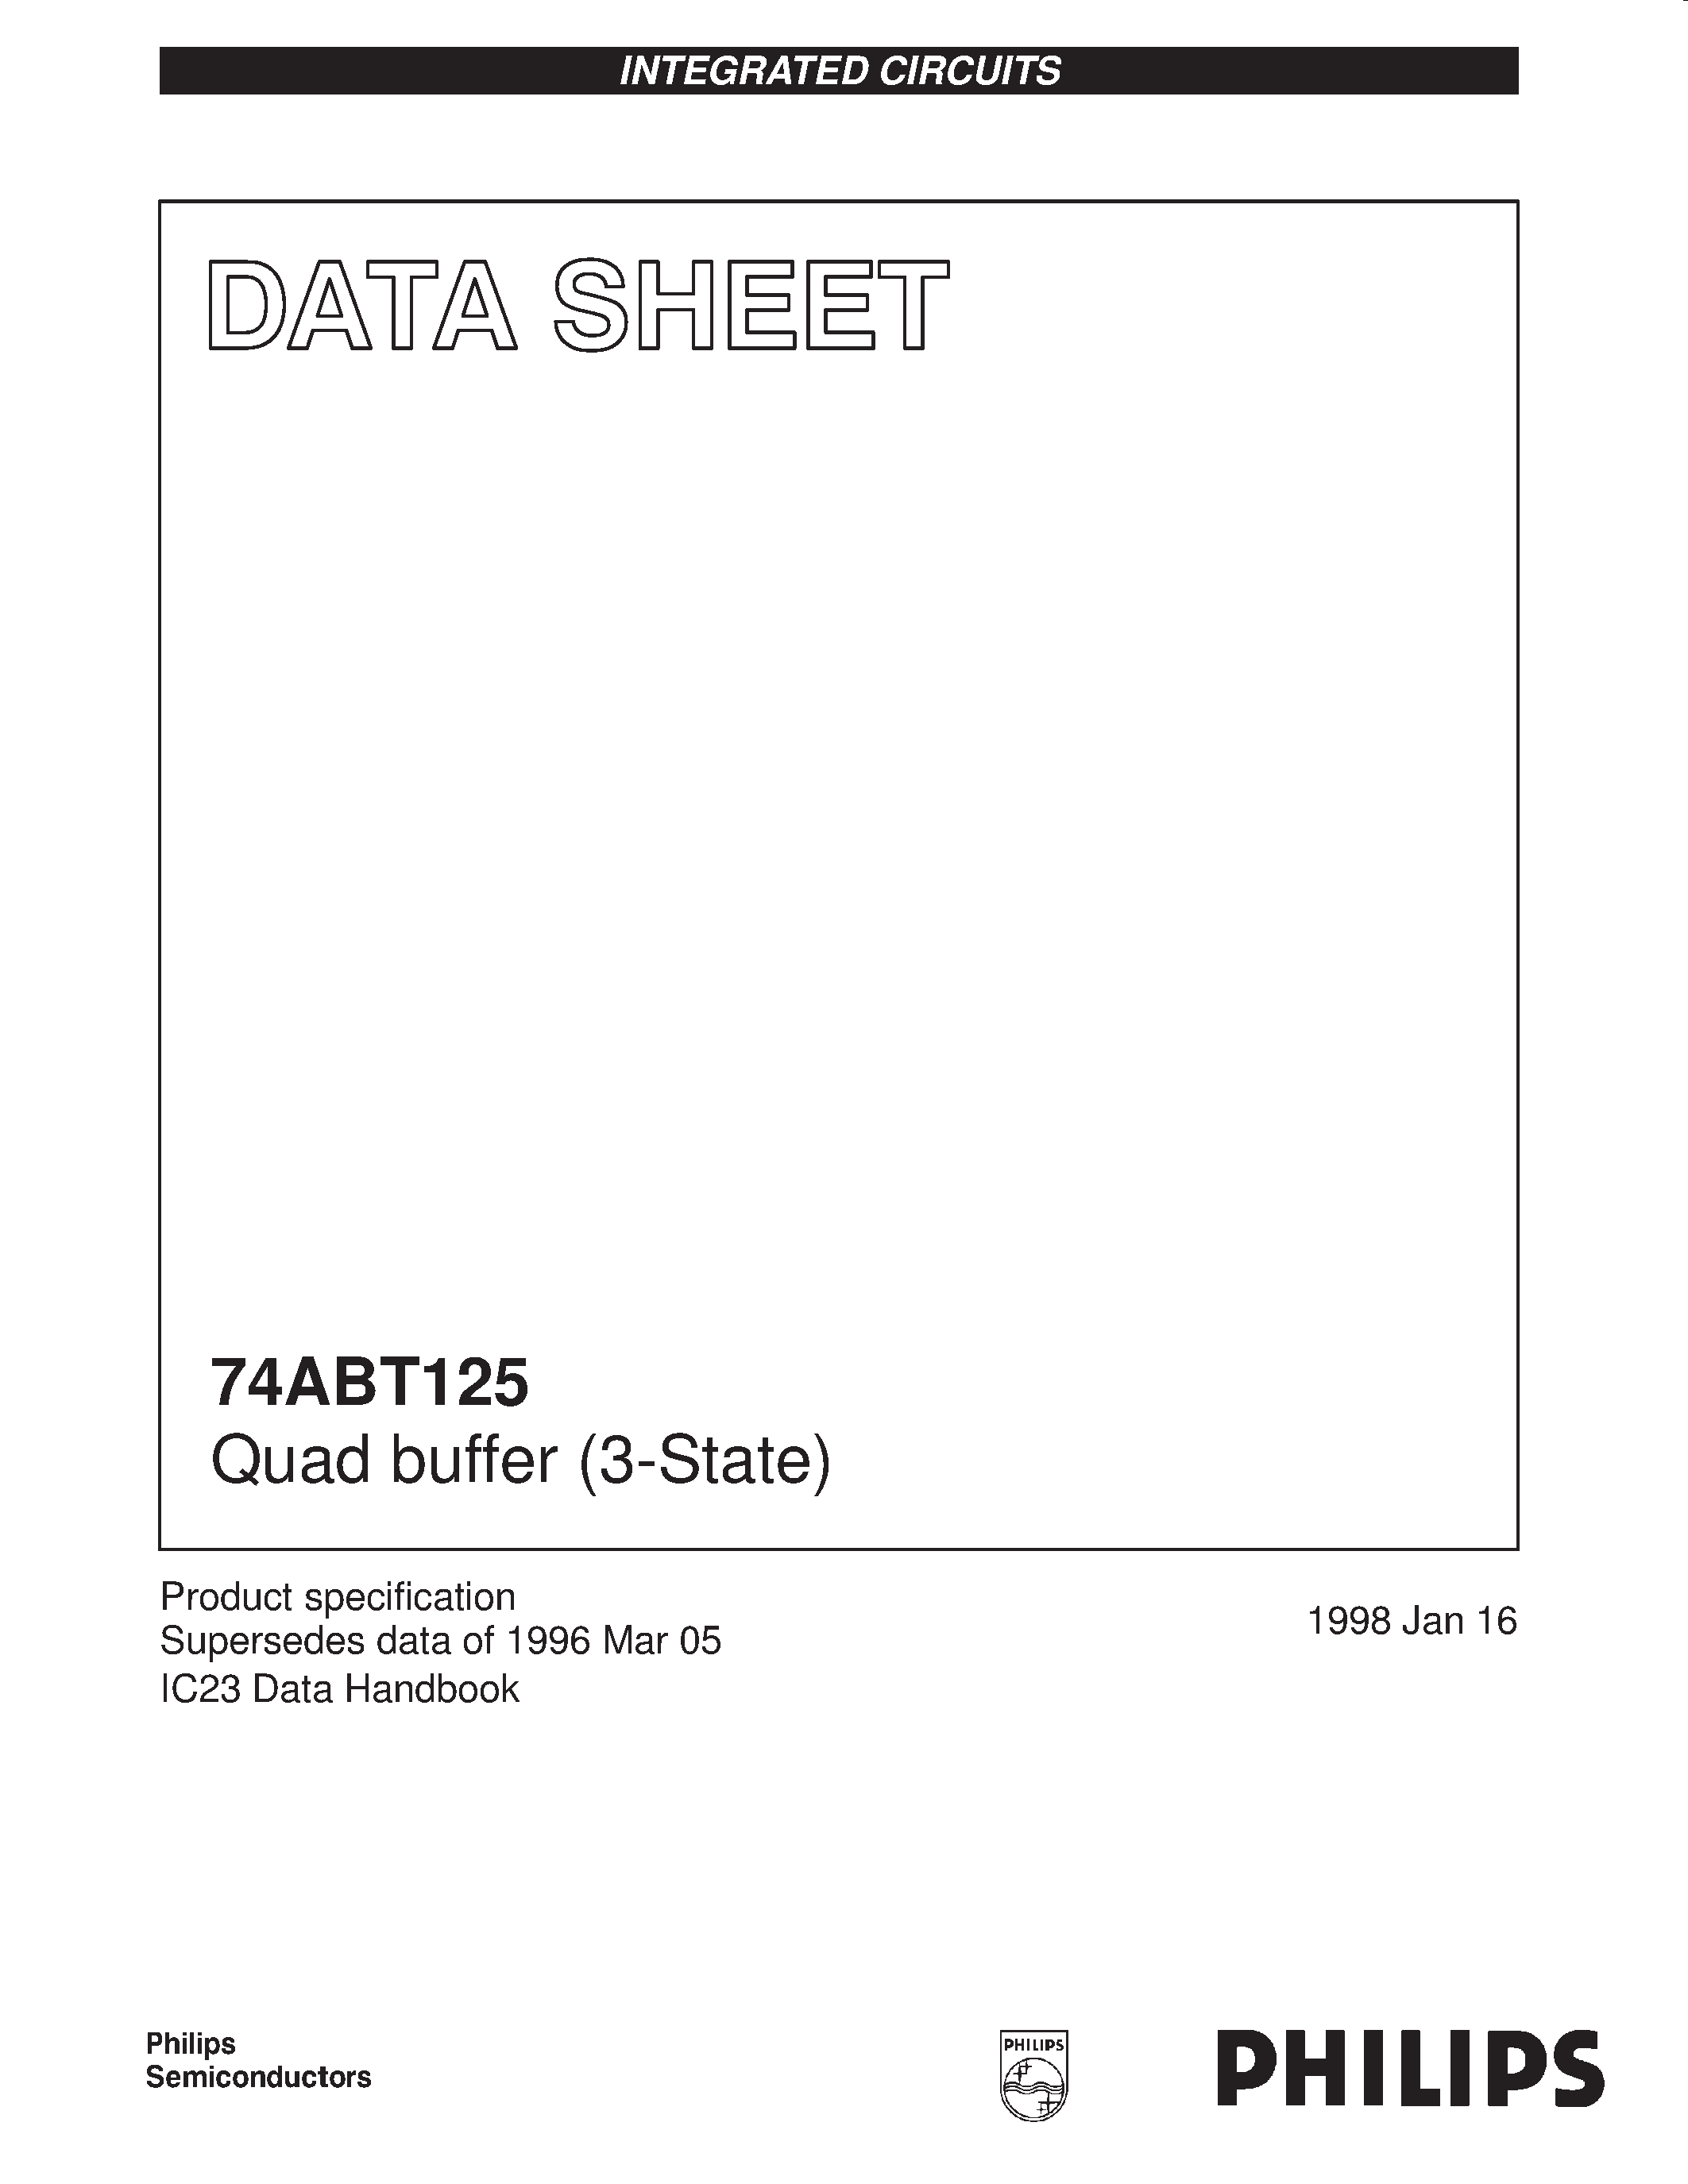 Даташит 74ABT125PW - Quad buffer 3-State страница 1